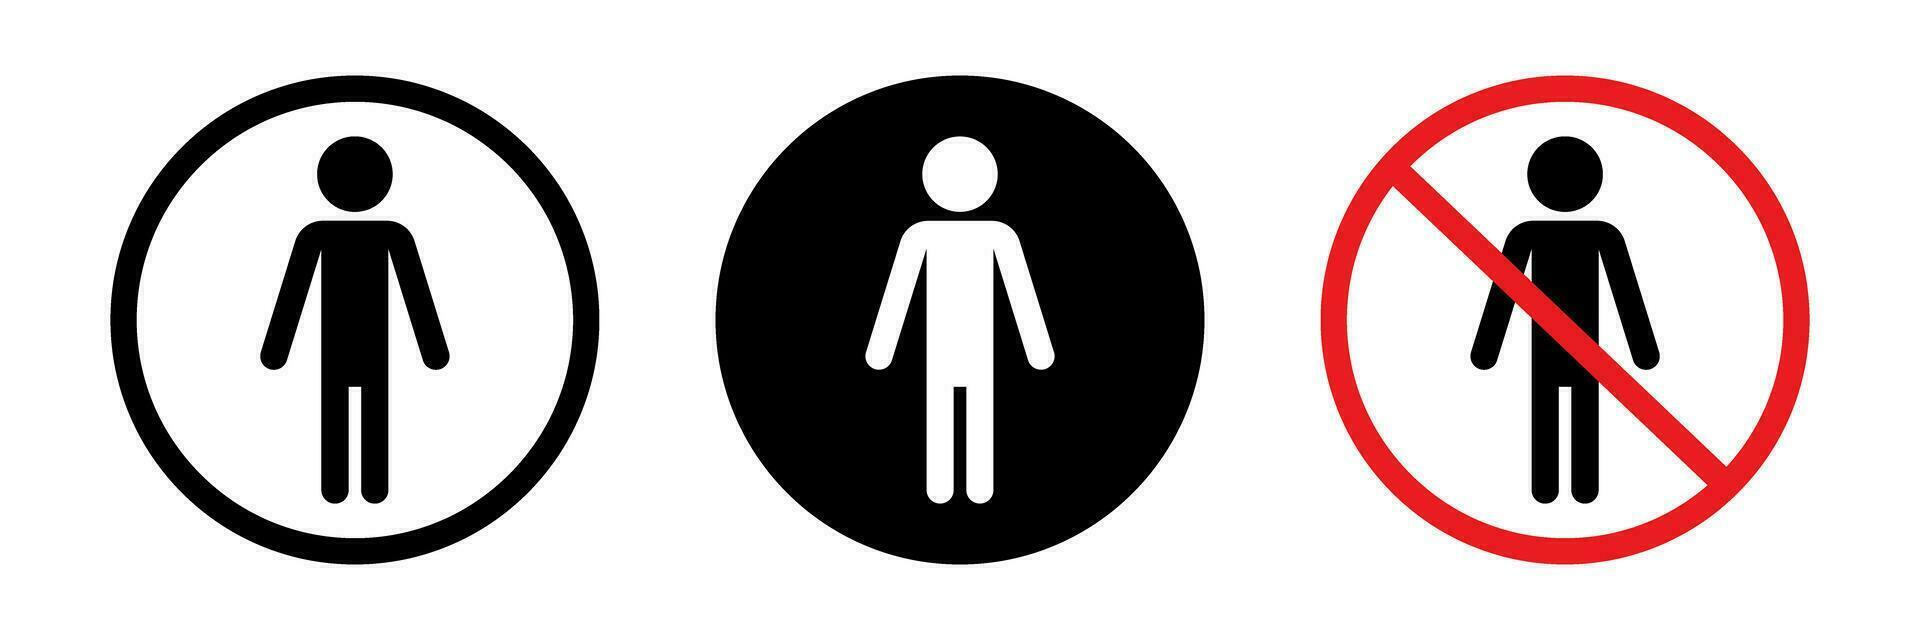 Human icon set. No Entry and Restroom Signs. Vectors. vector